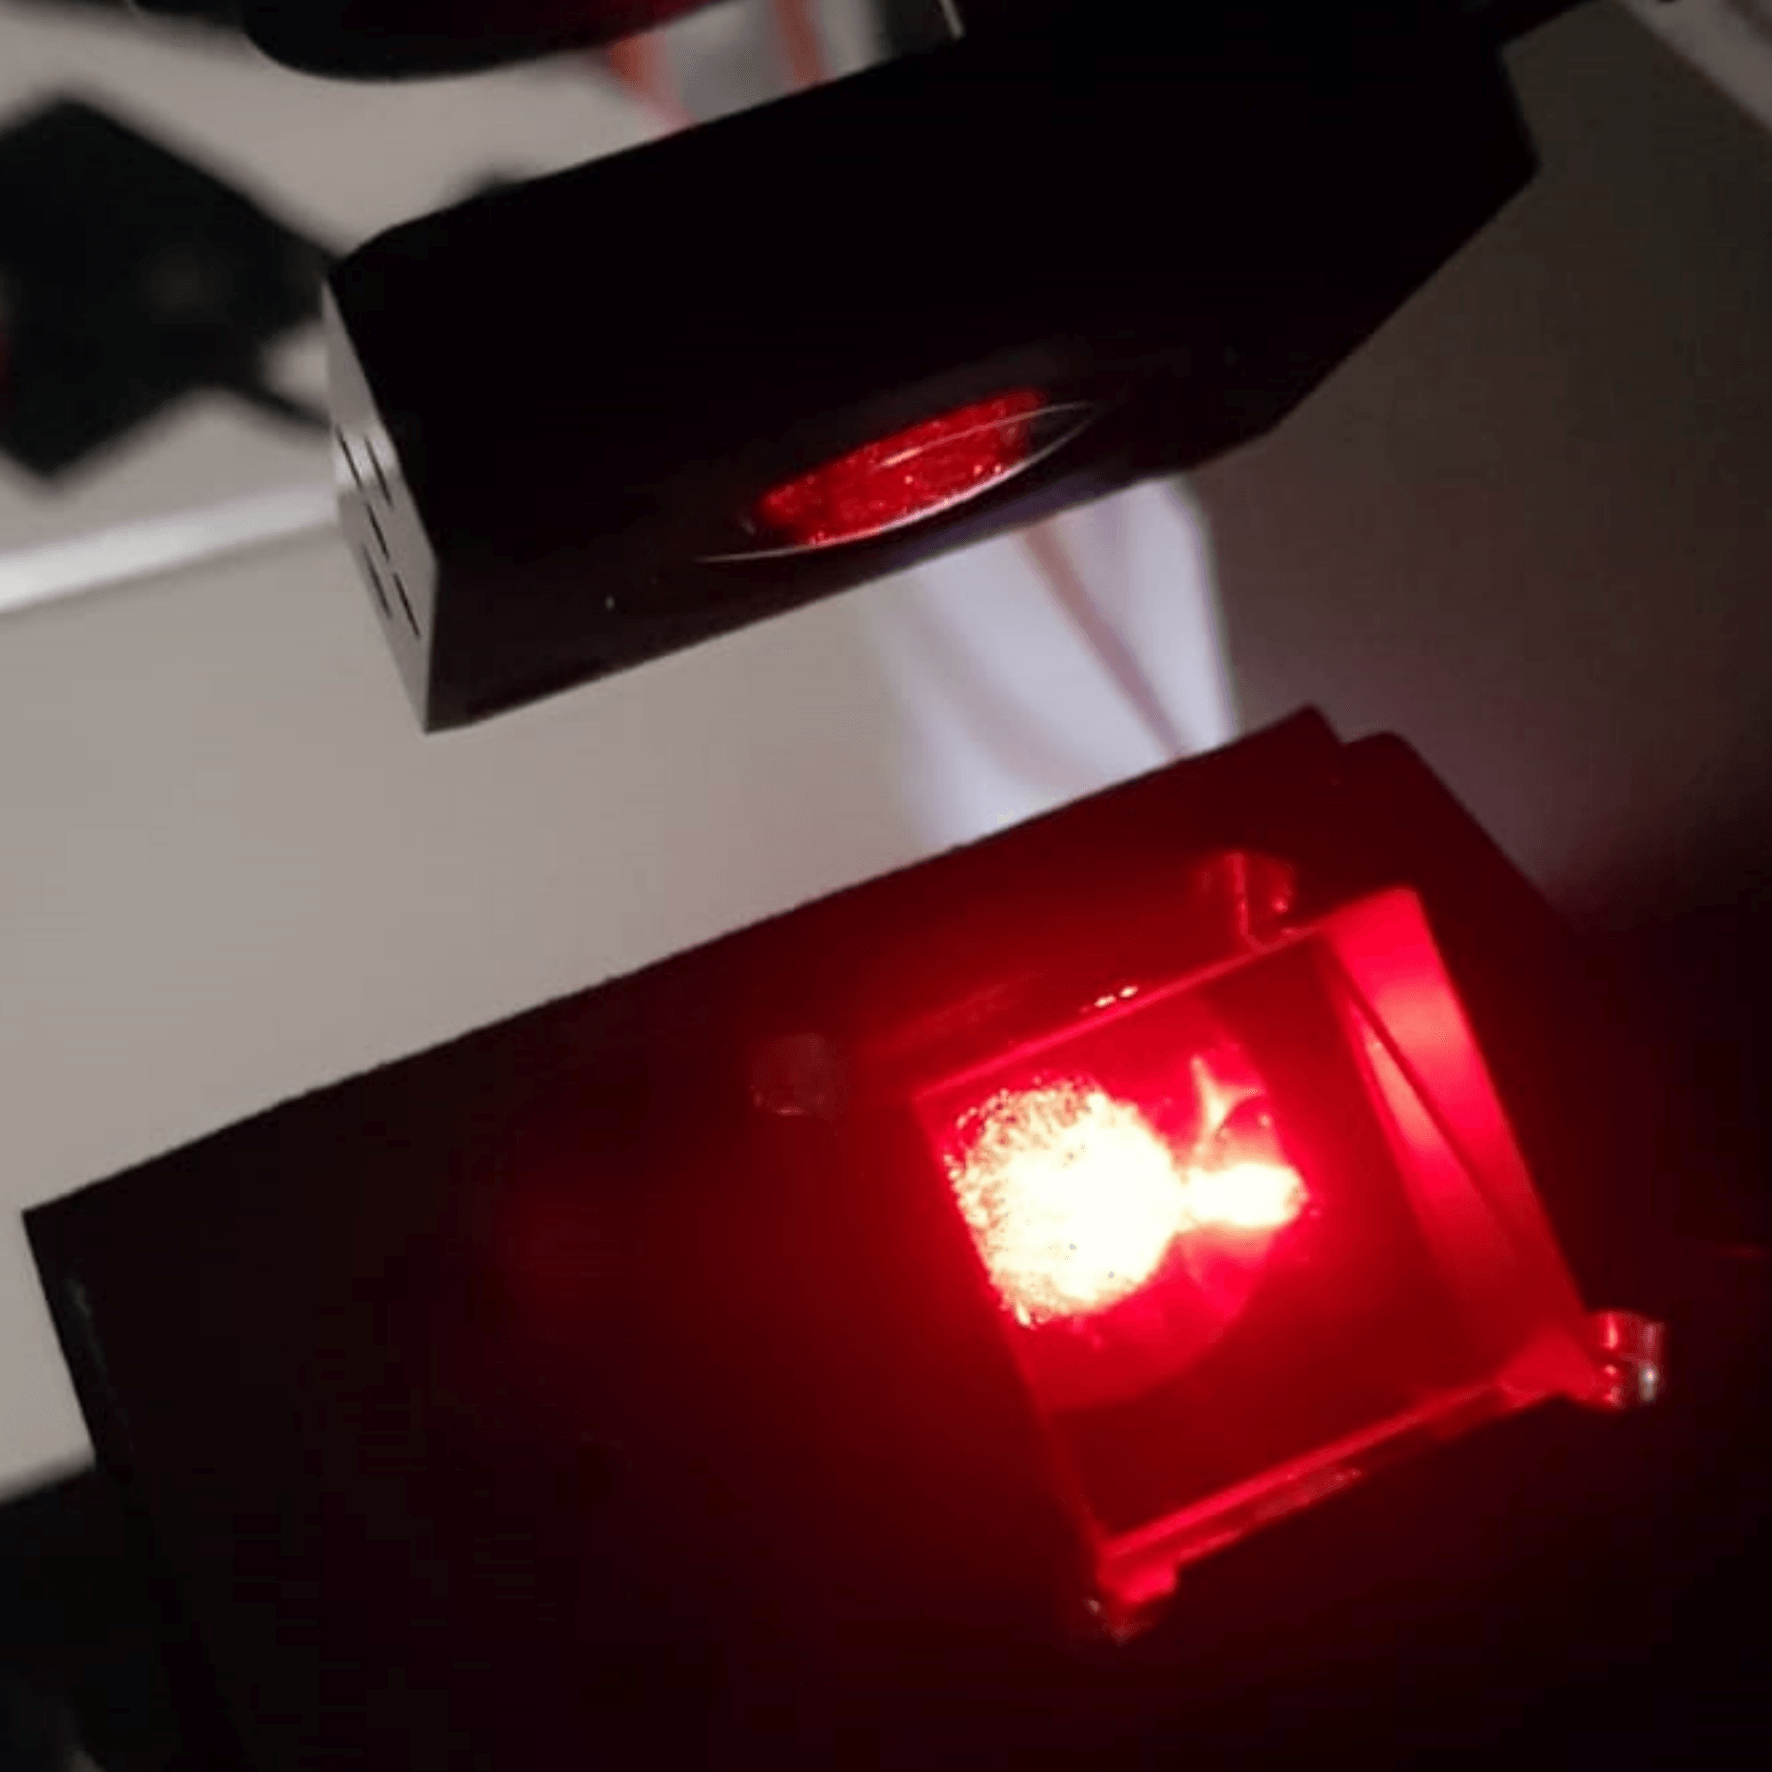 Blick in ein Messintrument mit rotem Laserlicht